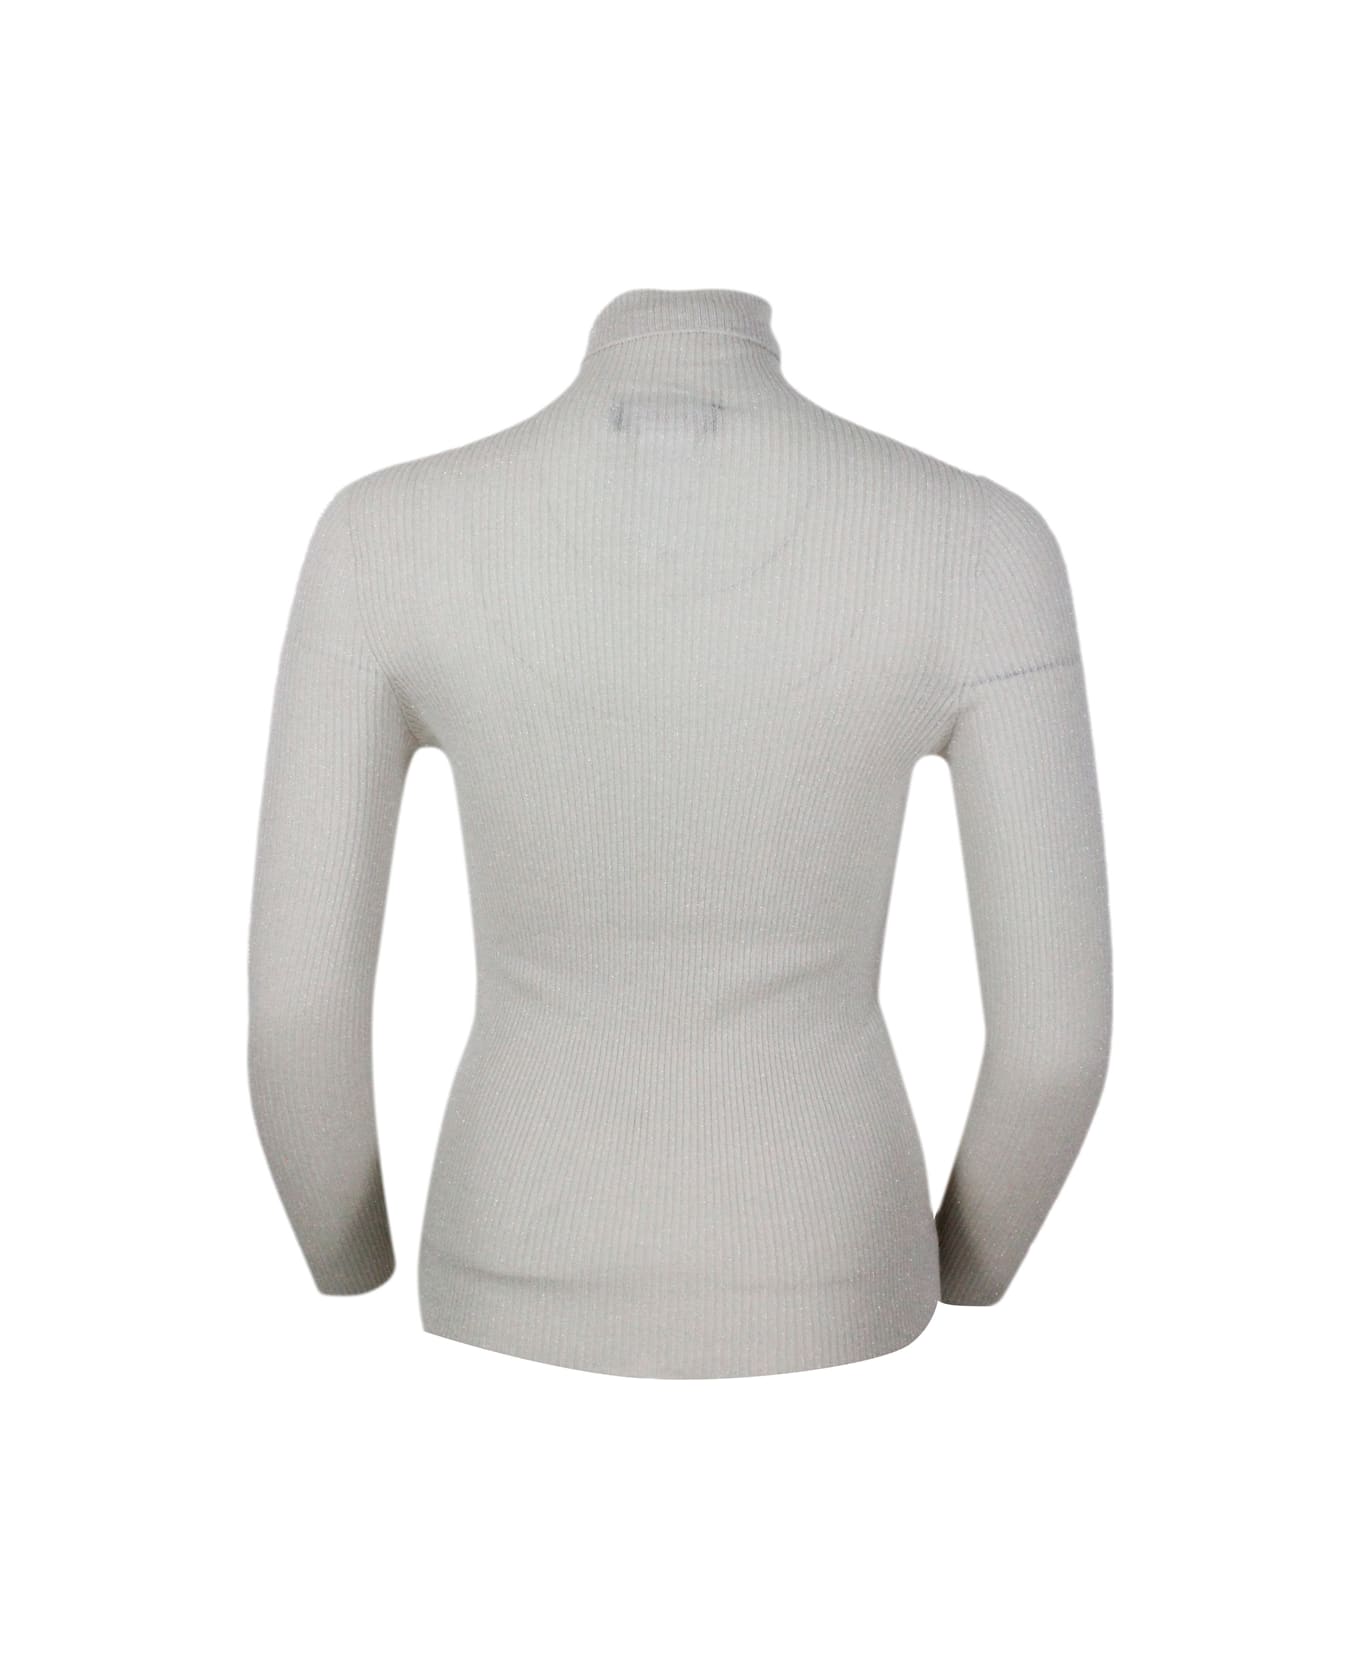 Fabiana Filippi Long-sleeved Turtleneck Sweater In Merino Lamè Embellished With Shiny Lurex That Gives Brightness - Beige ニットウェア